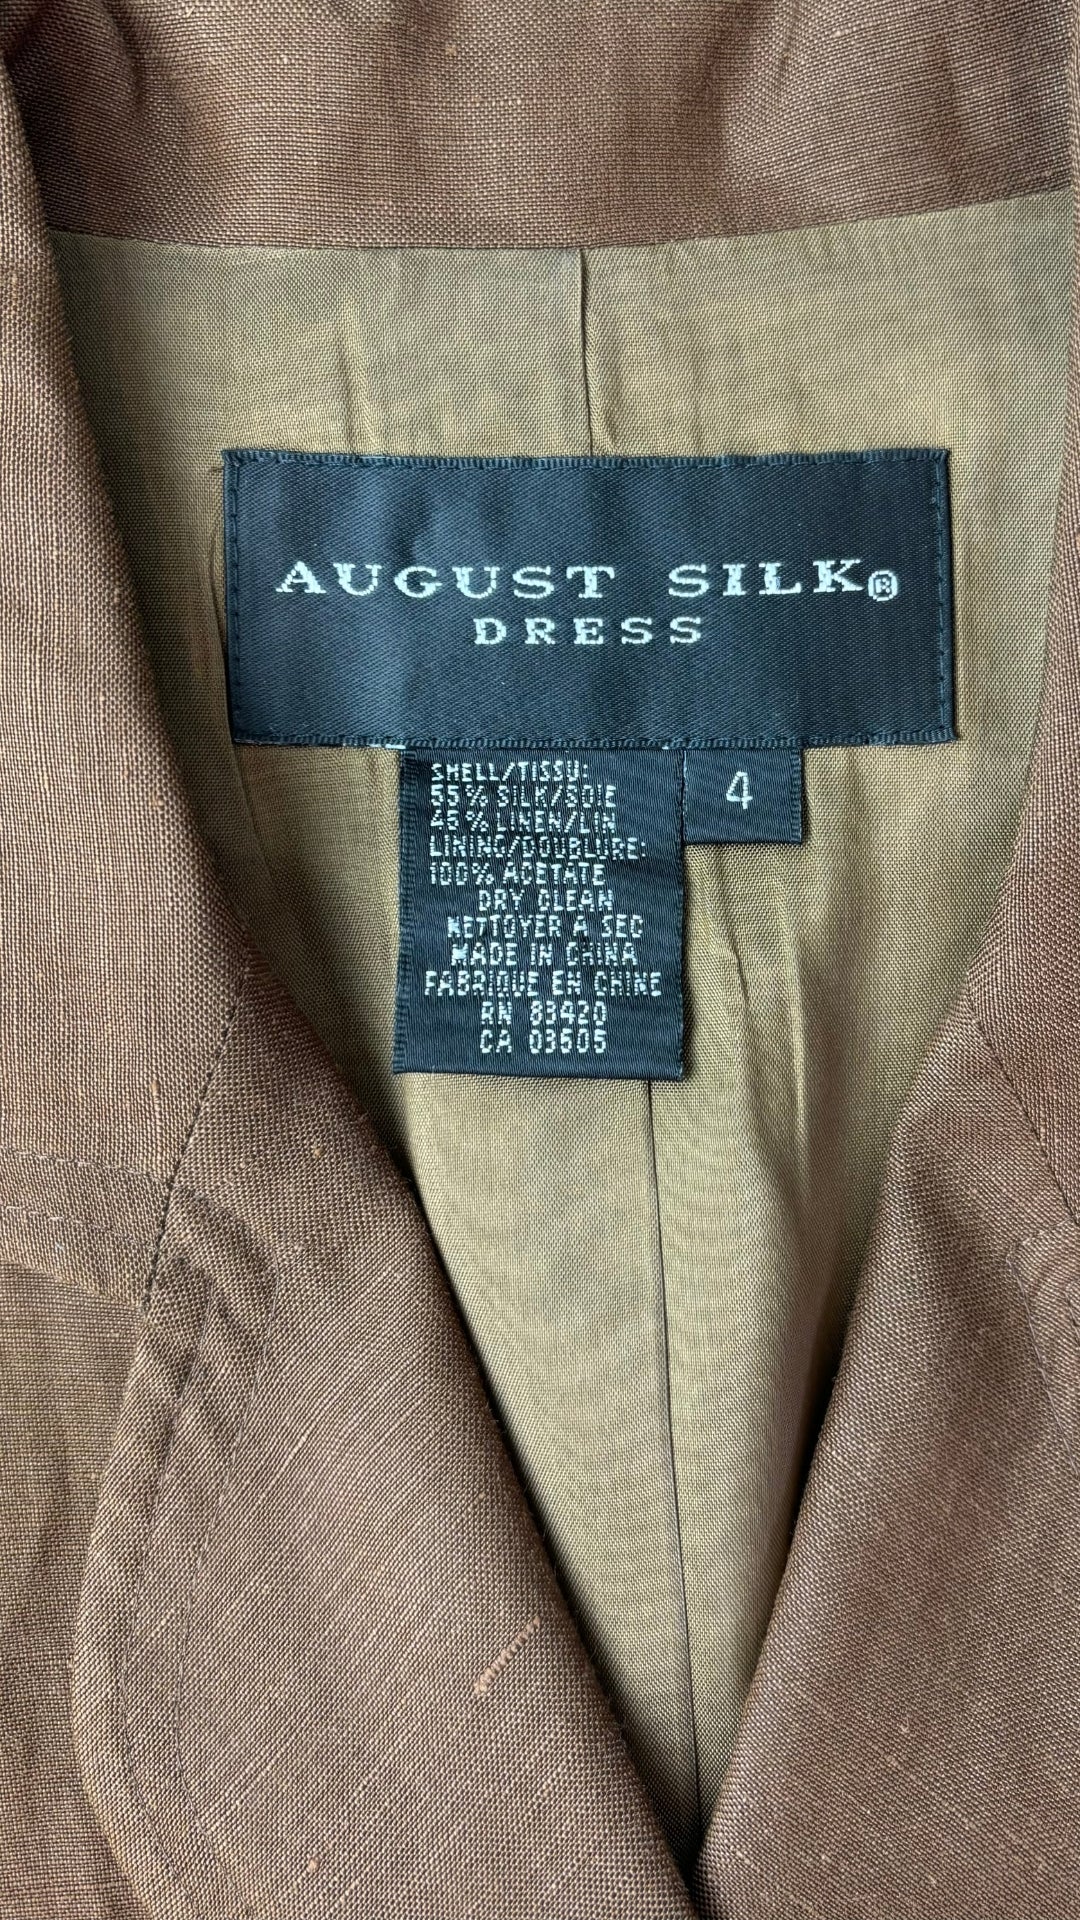 Robe chemisier café en soie et lin August Silk, taille 4. Vue de l'étiquette de marque, taille et composition.